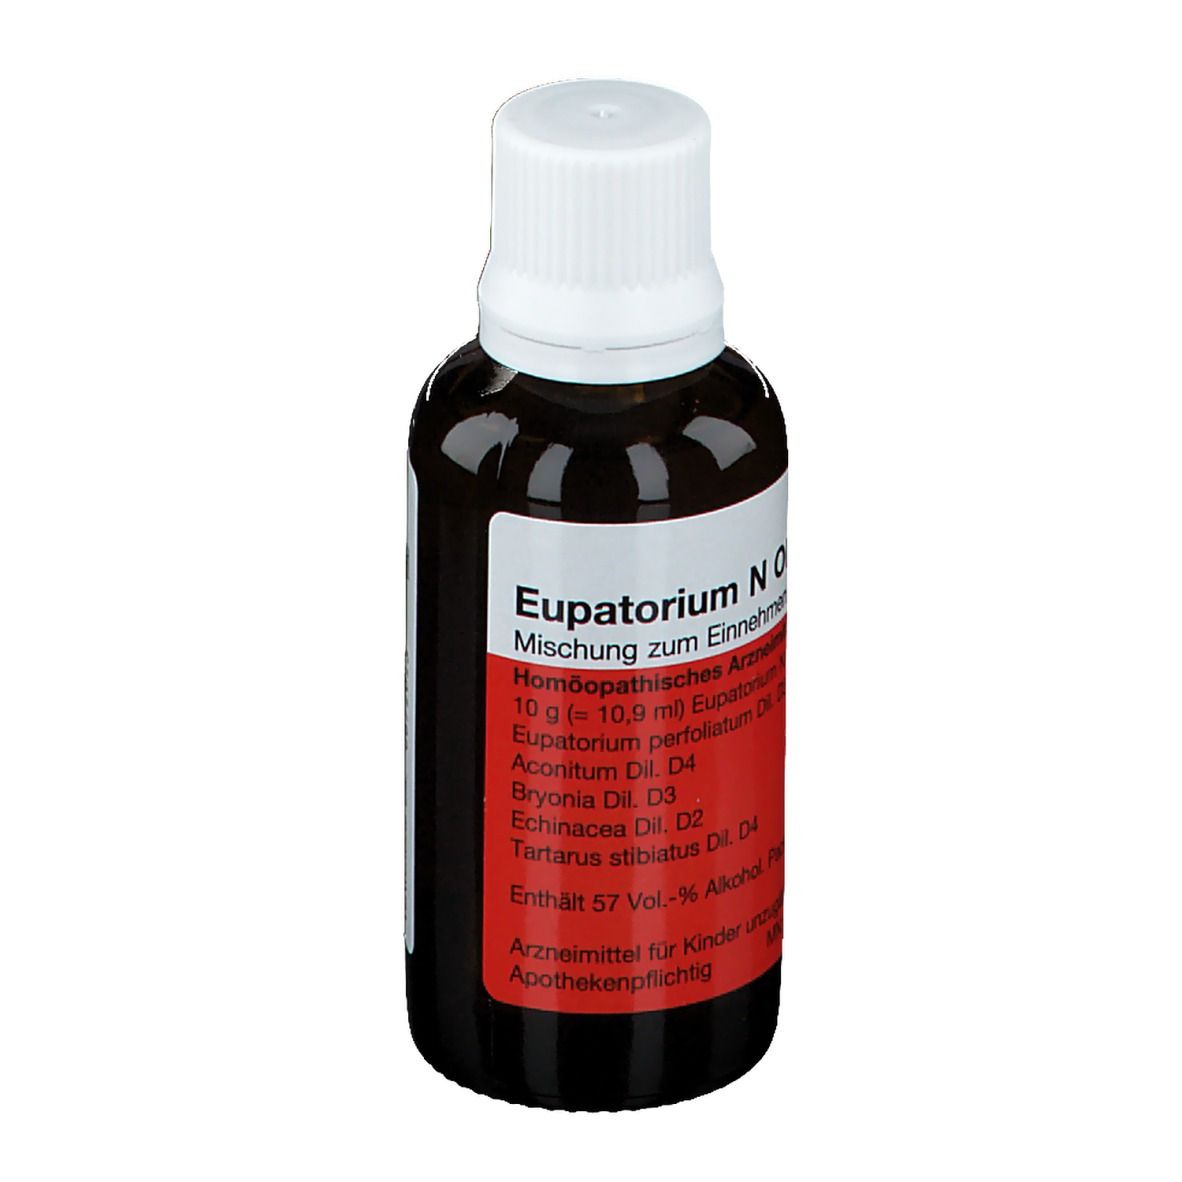 Eupatorium N Oligoplex Liquid